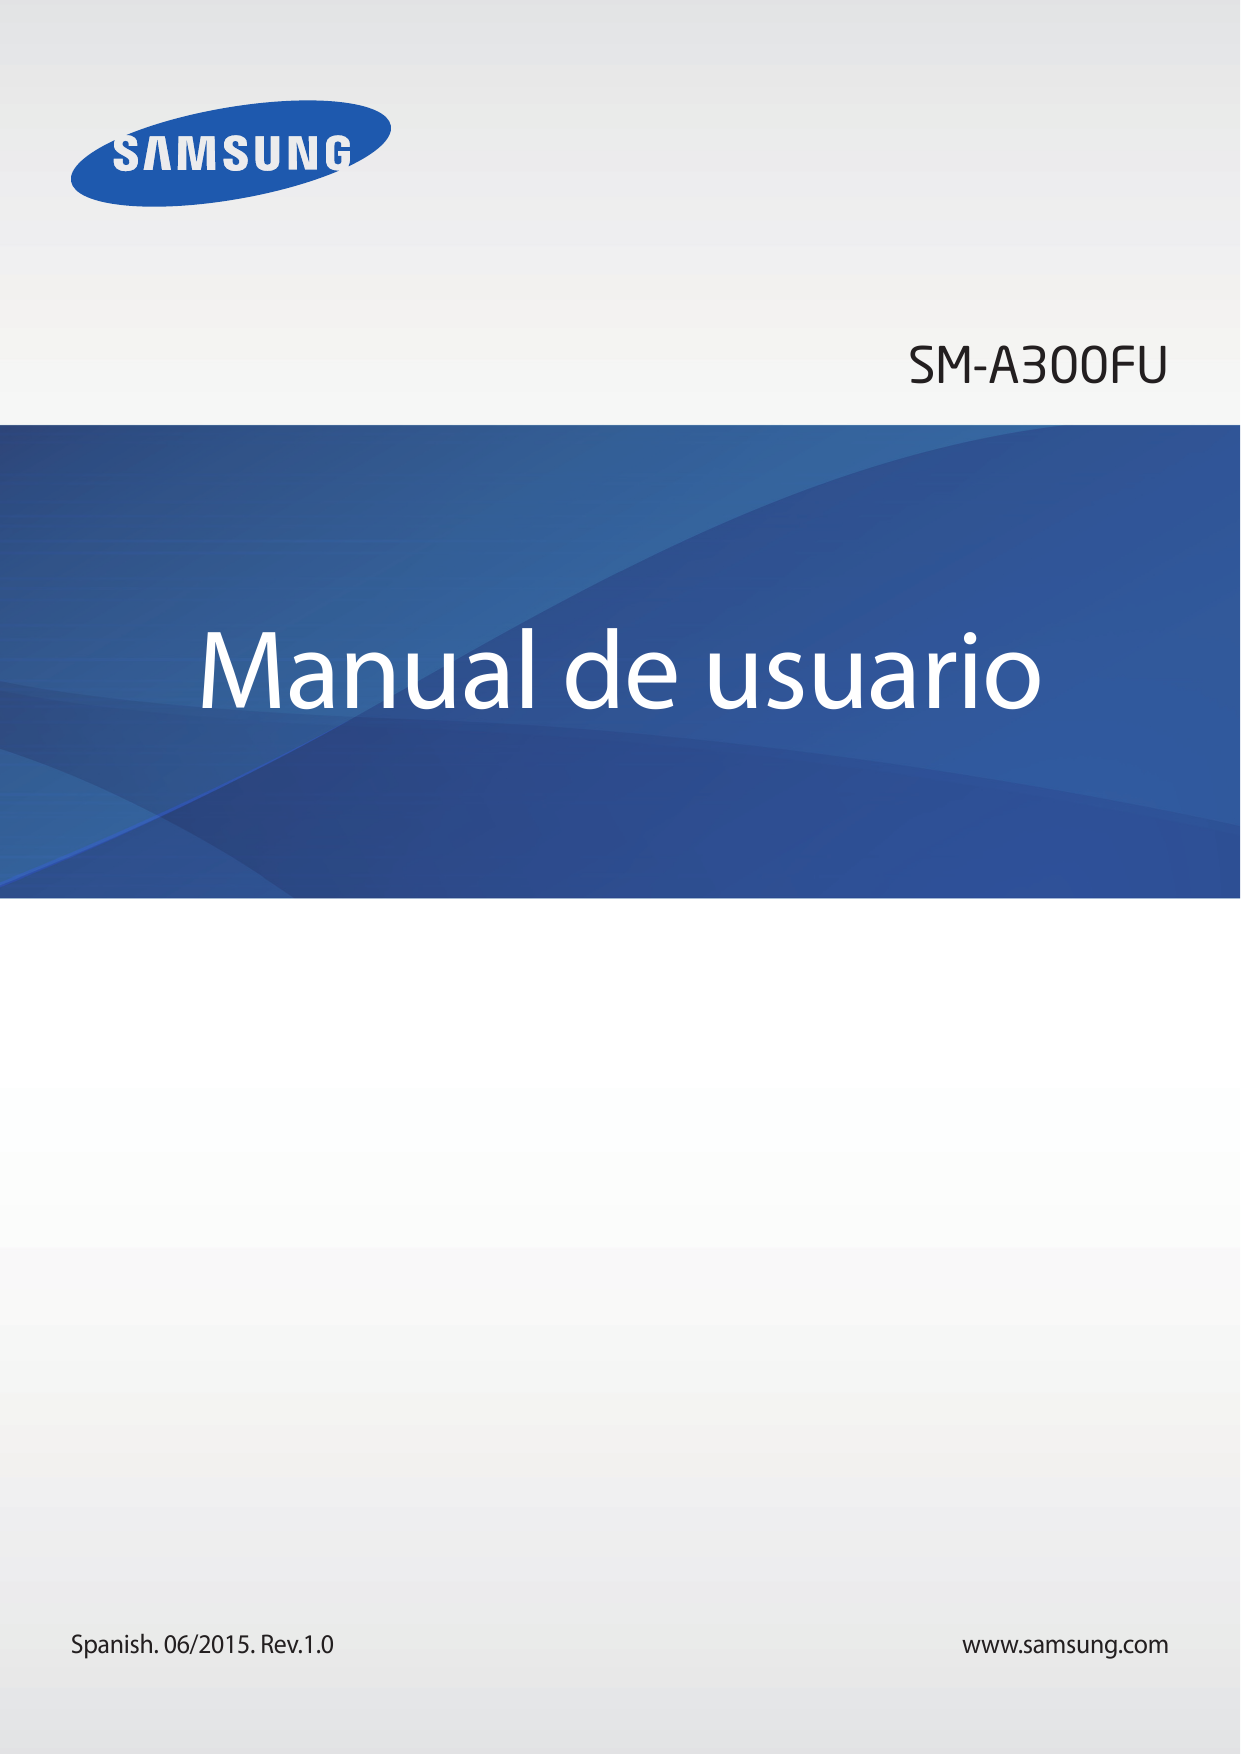 SM-A300FUManual de usuarioSpanish. 06/2015. Rev.1.0www.samsung.com